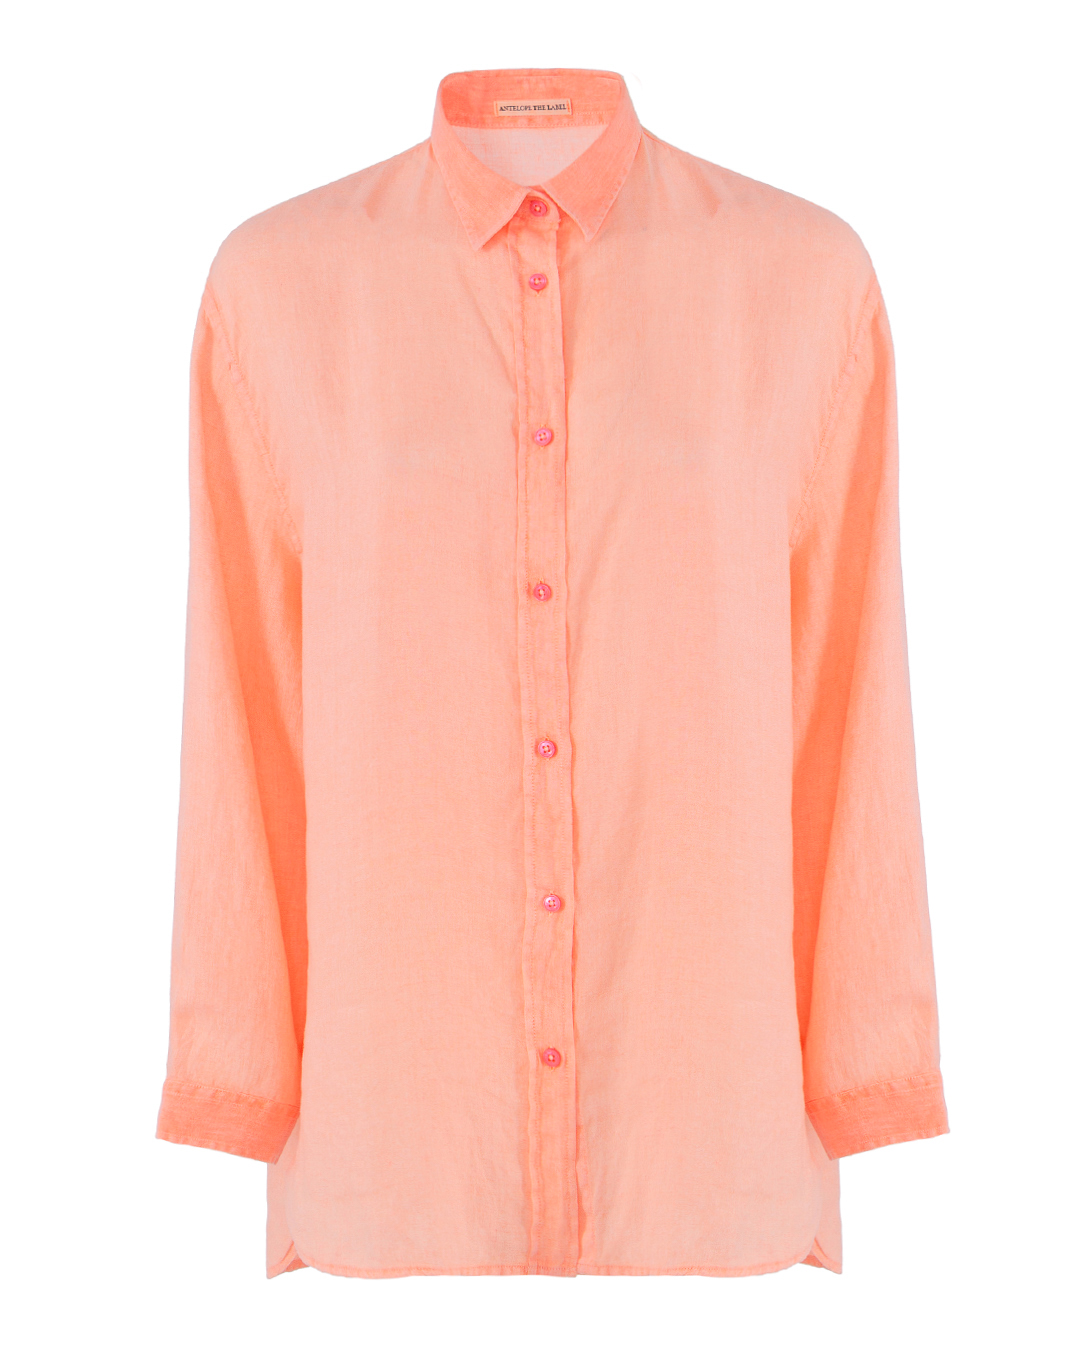 рубашка ANTELOPE THE LABEL A1.ORANGE оранжевый UNI, размер UNI - фото 1